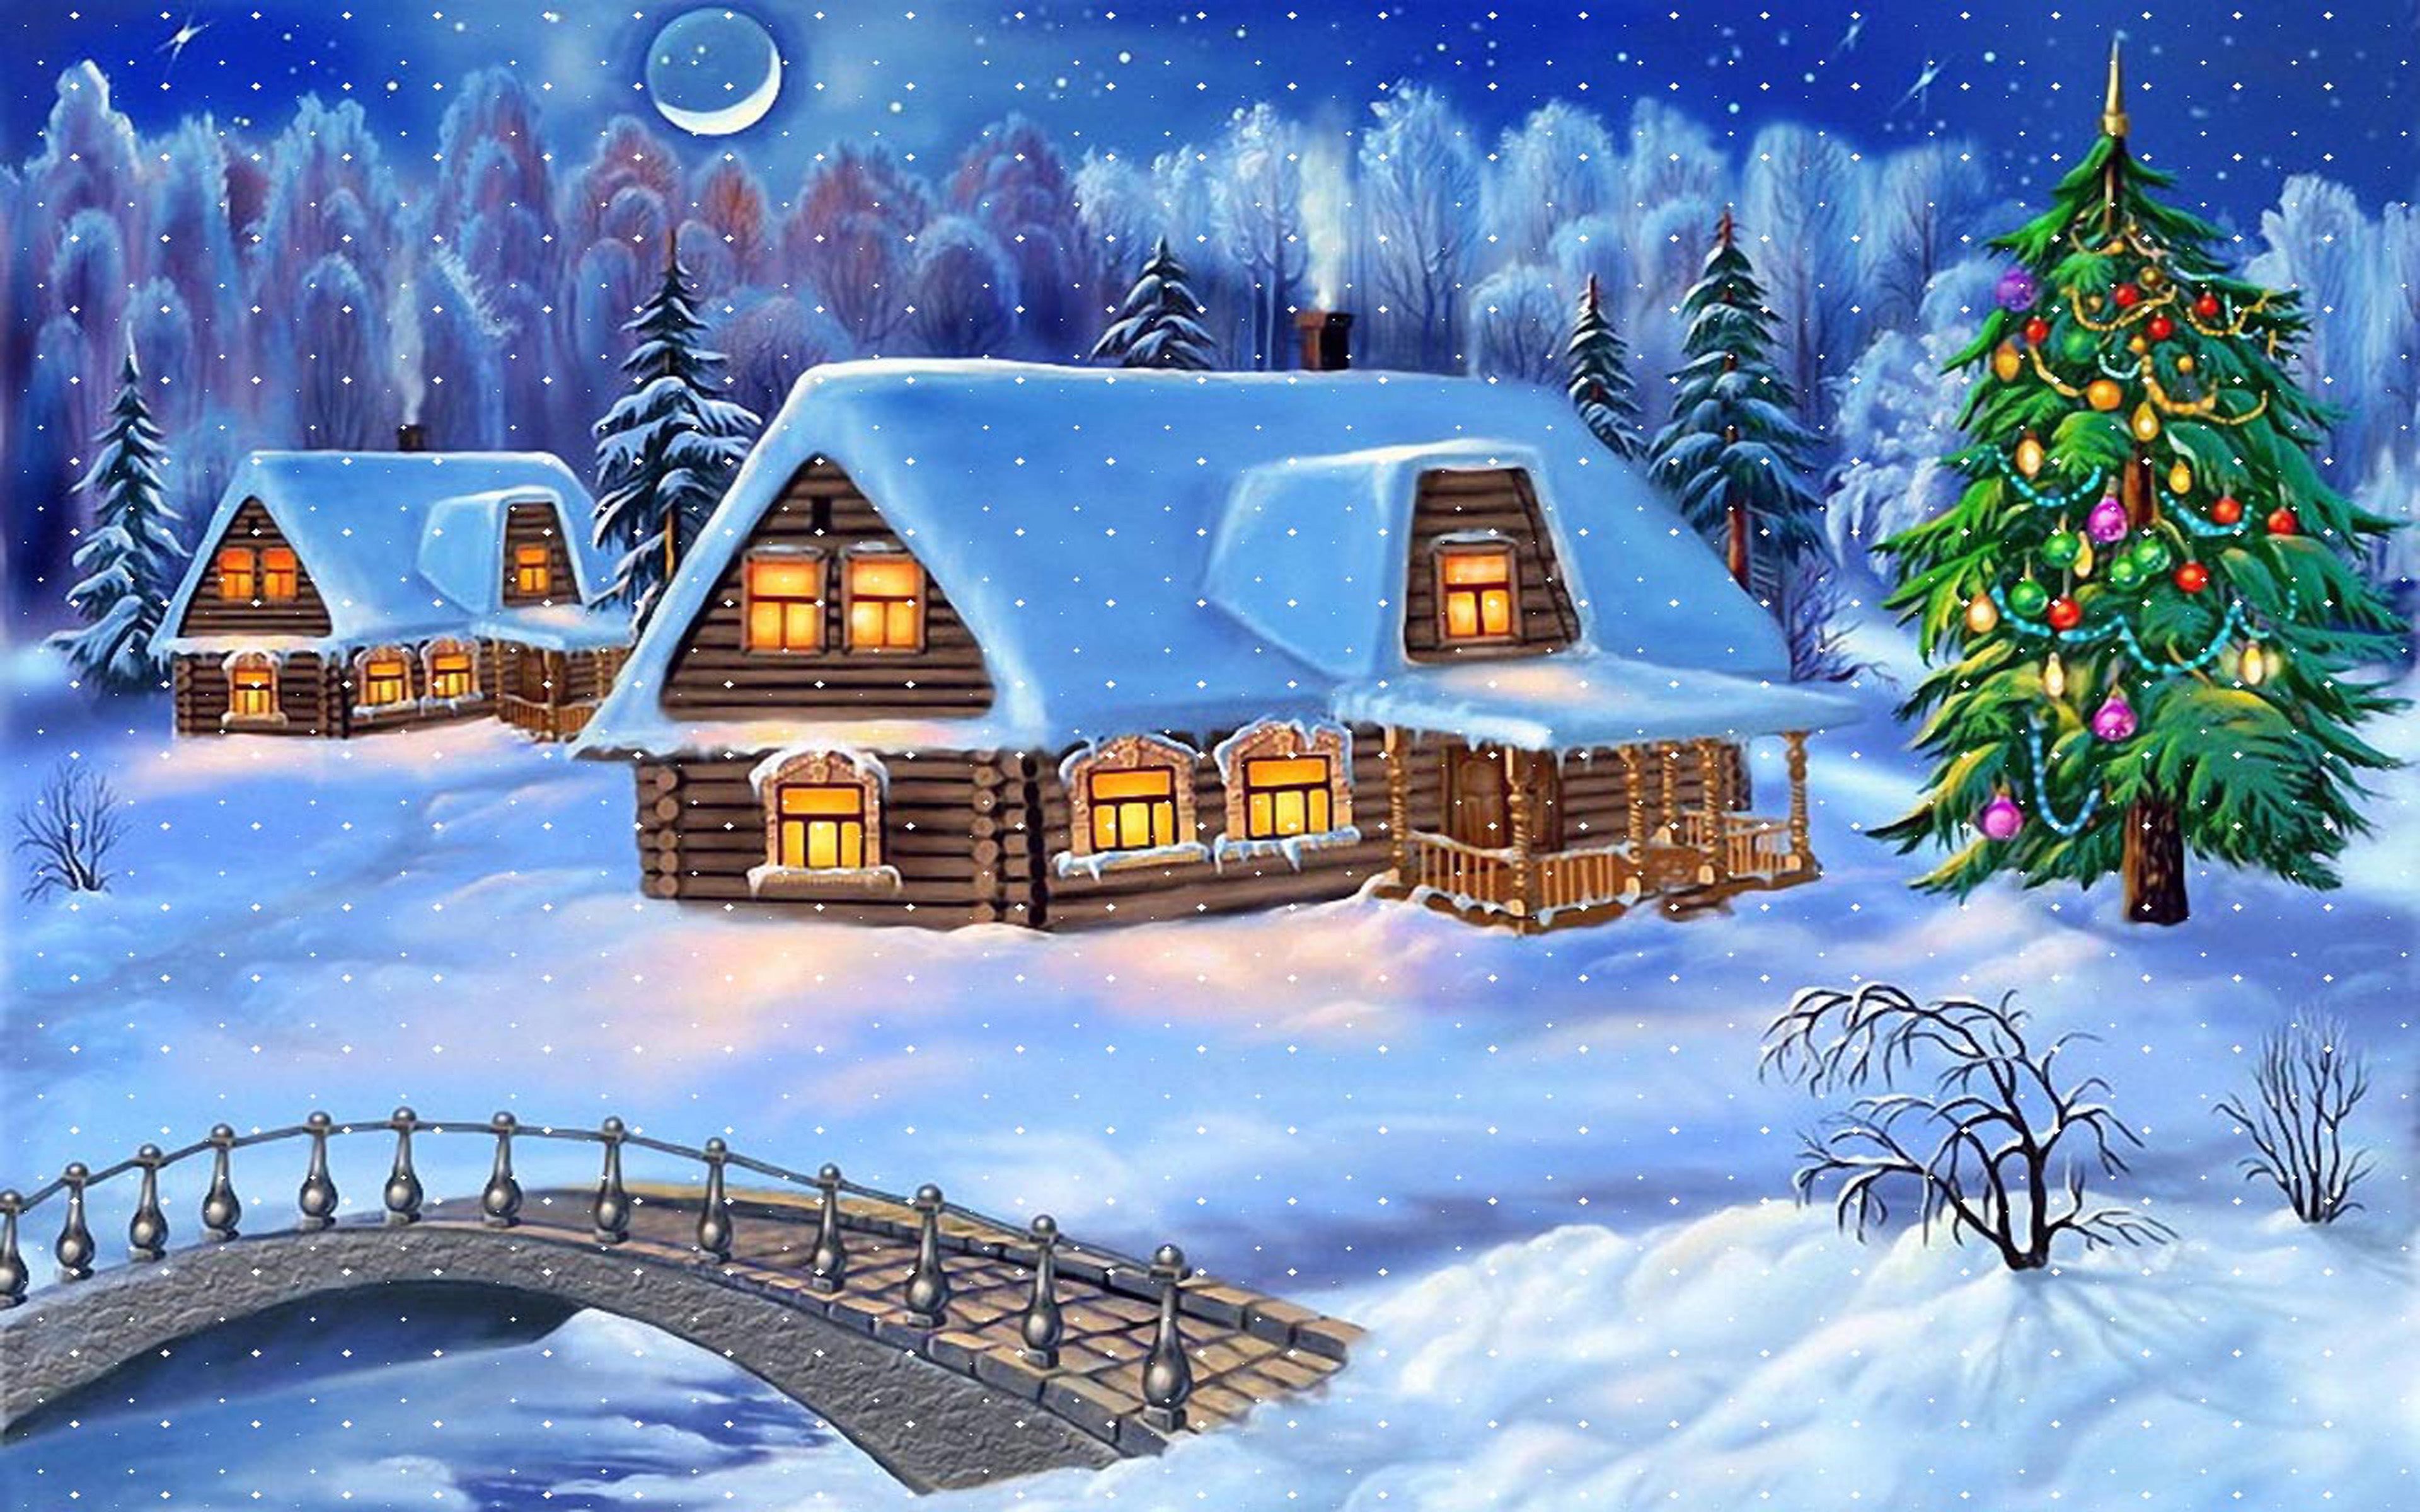 Sfondi Natalizi Per Desktop.Scarica Sfondi Natale 4k Villaggio Inverno Capodanno Monitor Con Risoluzione 3840x2400 Immagini Sul Desktop